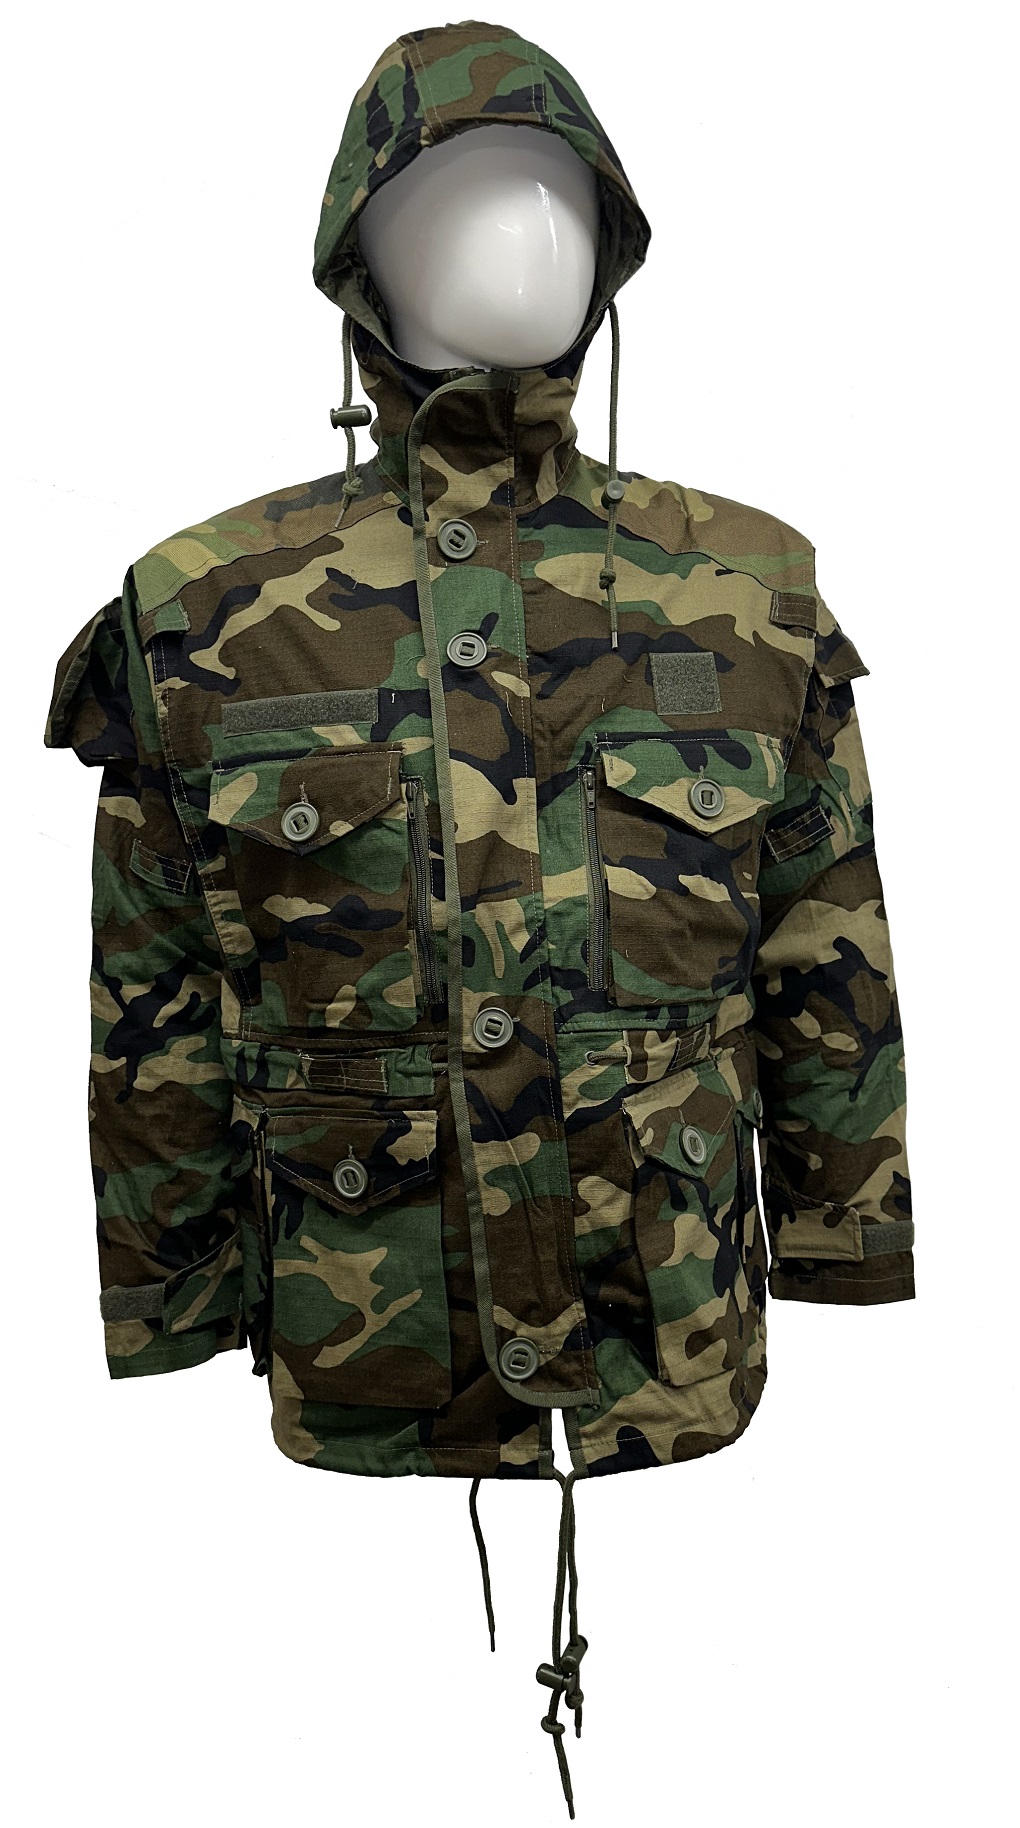 Paratrooper jacket